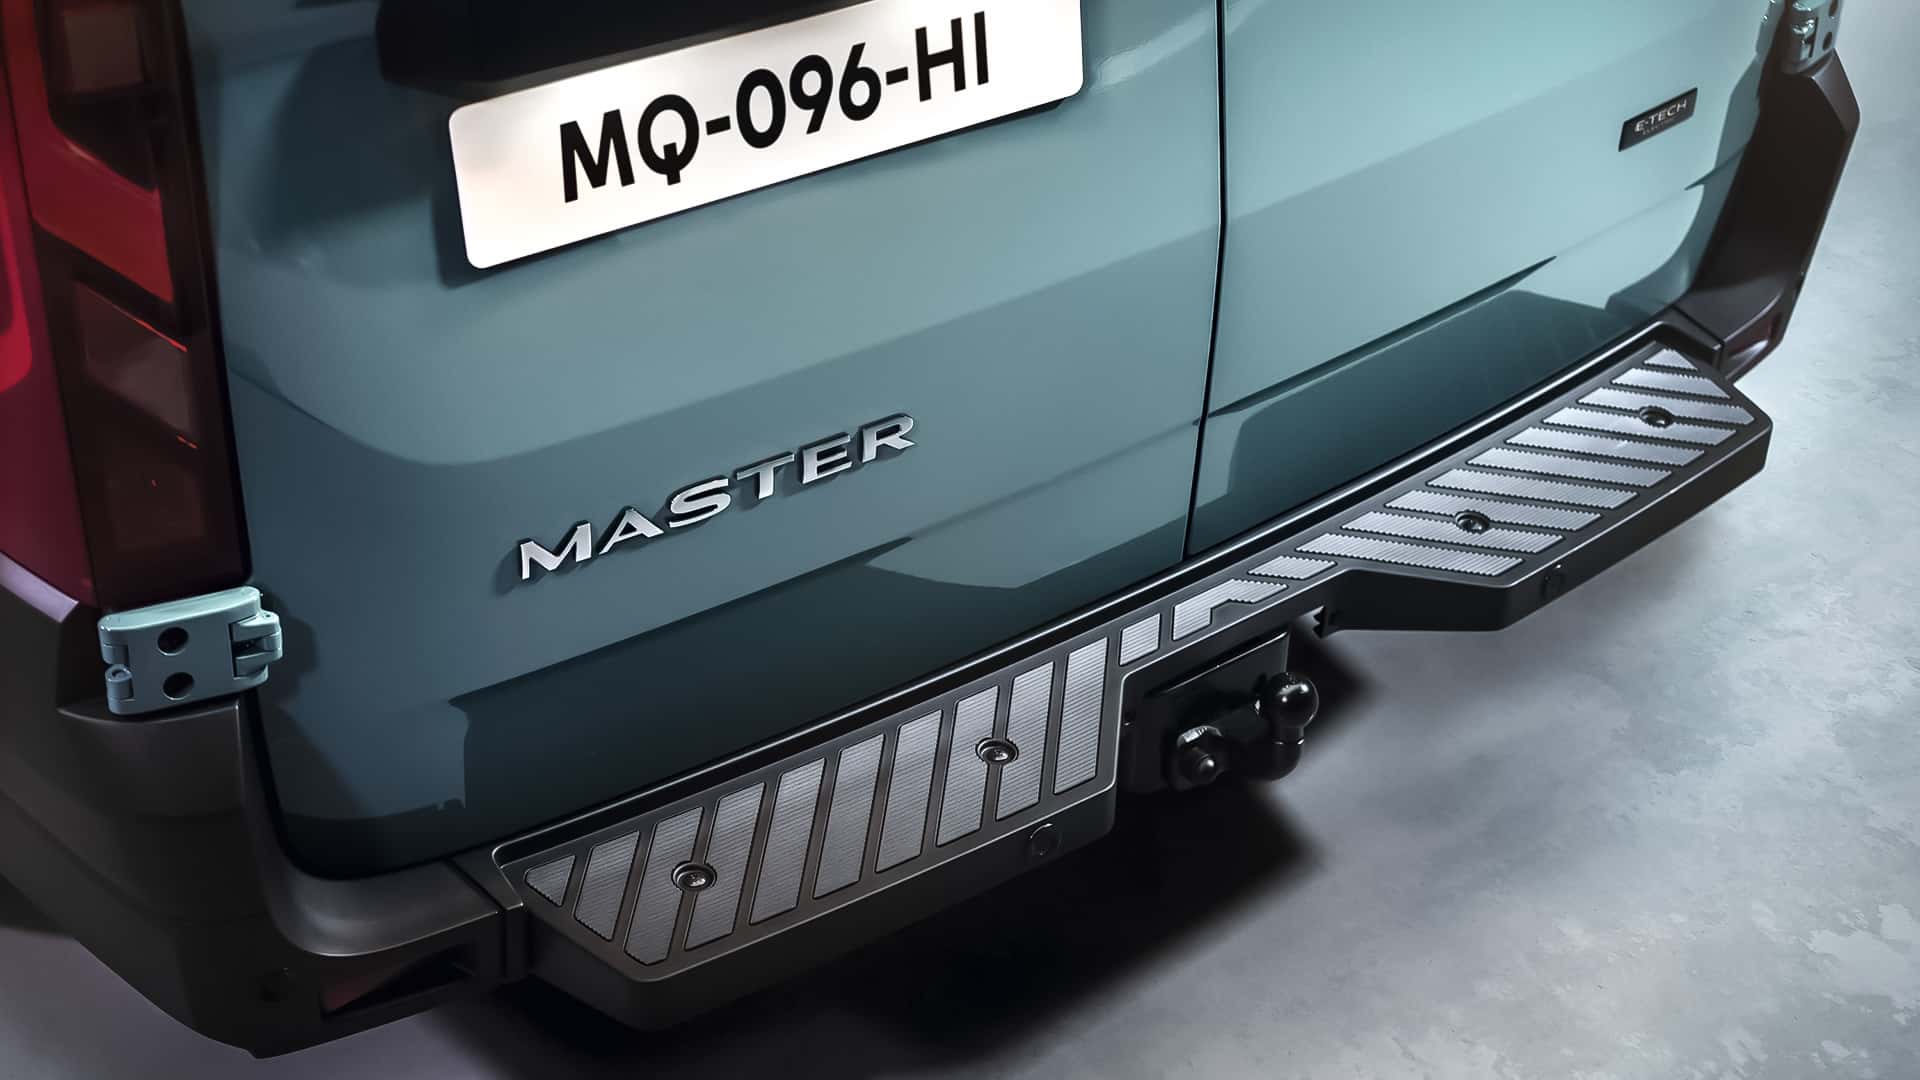 2024 Renault Master, dizel, hidrojen yakıtlı ve elektrikli versiyonlarla geliyor